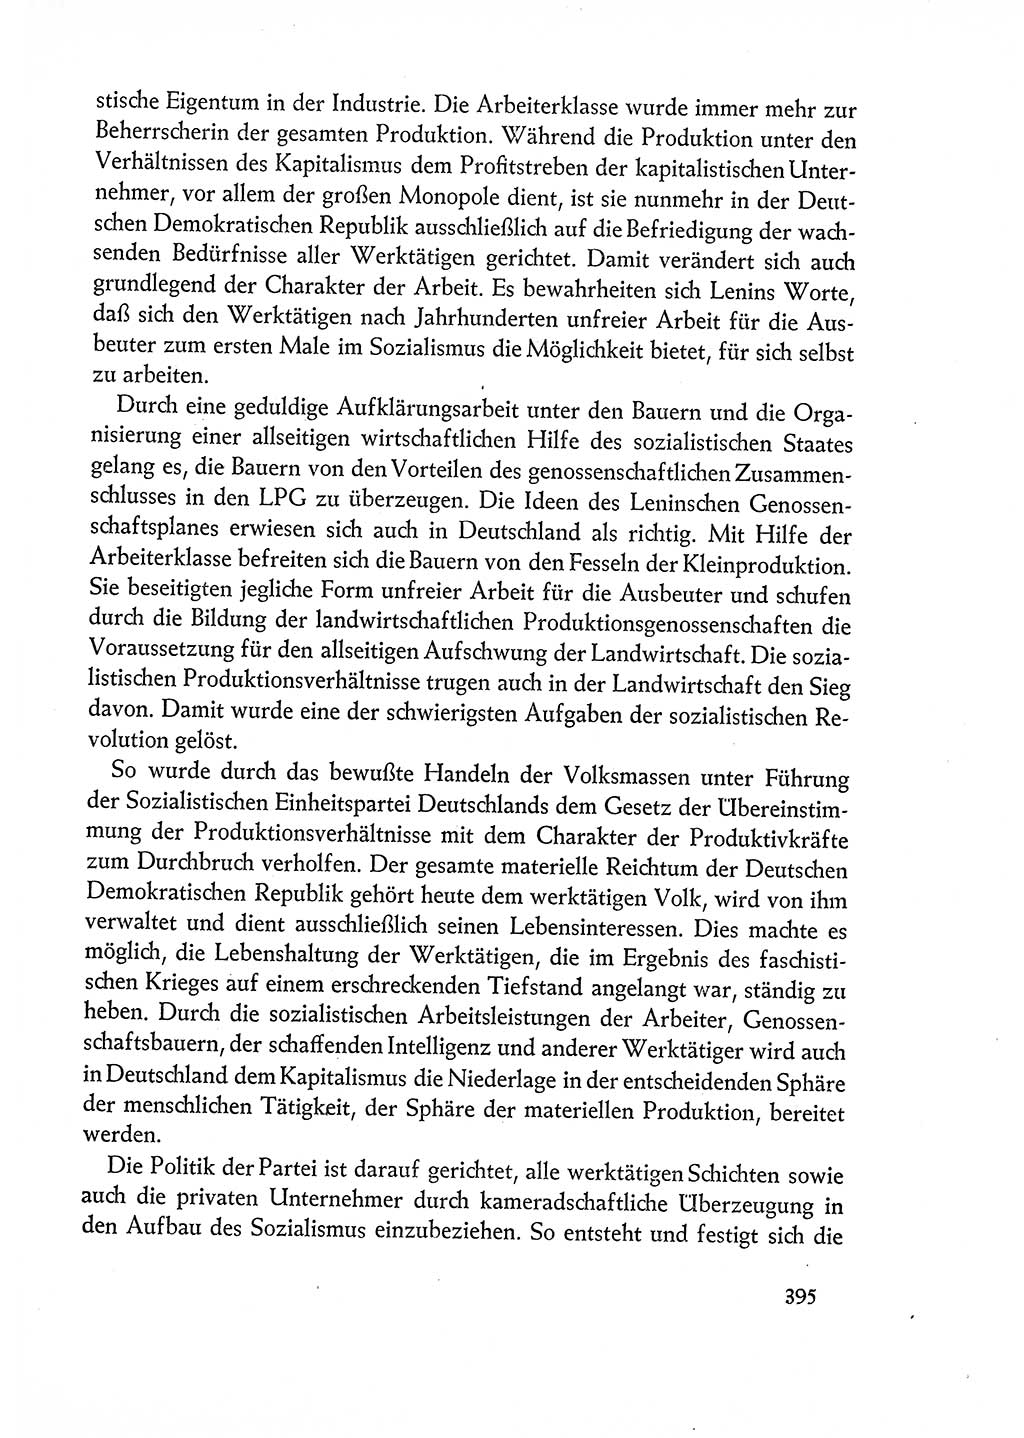 Dokumente der Sozialistischen Einheitspartei Deutschlands (SED) [Deutsche Demokratische Republik (DDR)] 1960-1961, Seite 395 (Dok. SED DDR 1960-1961, S. 395)